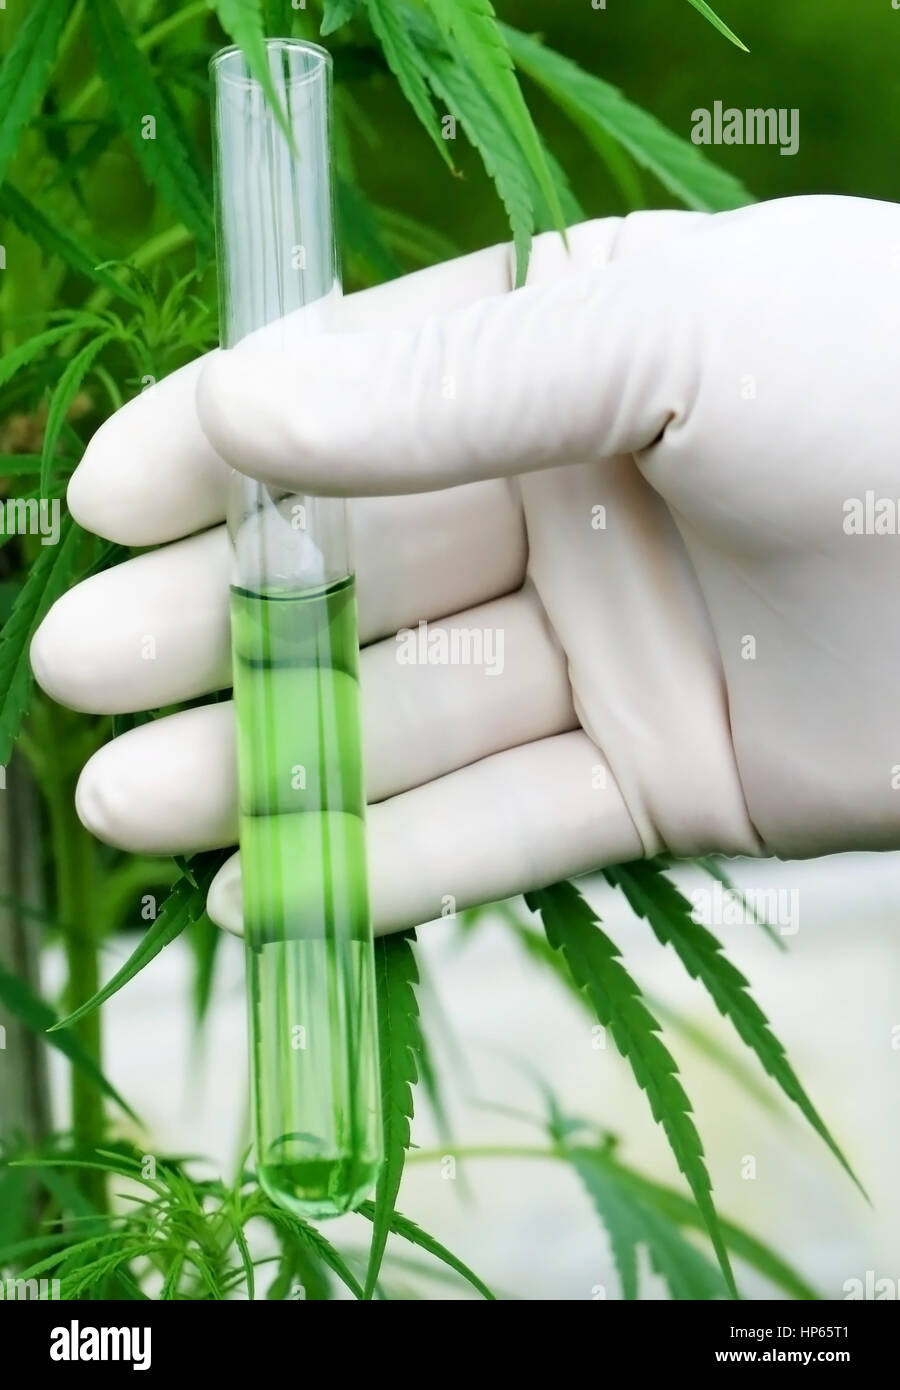 Extrait de cannabis en tube à essai tenue par le scientifique Banque D'Images